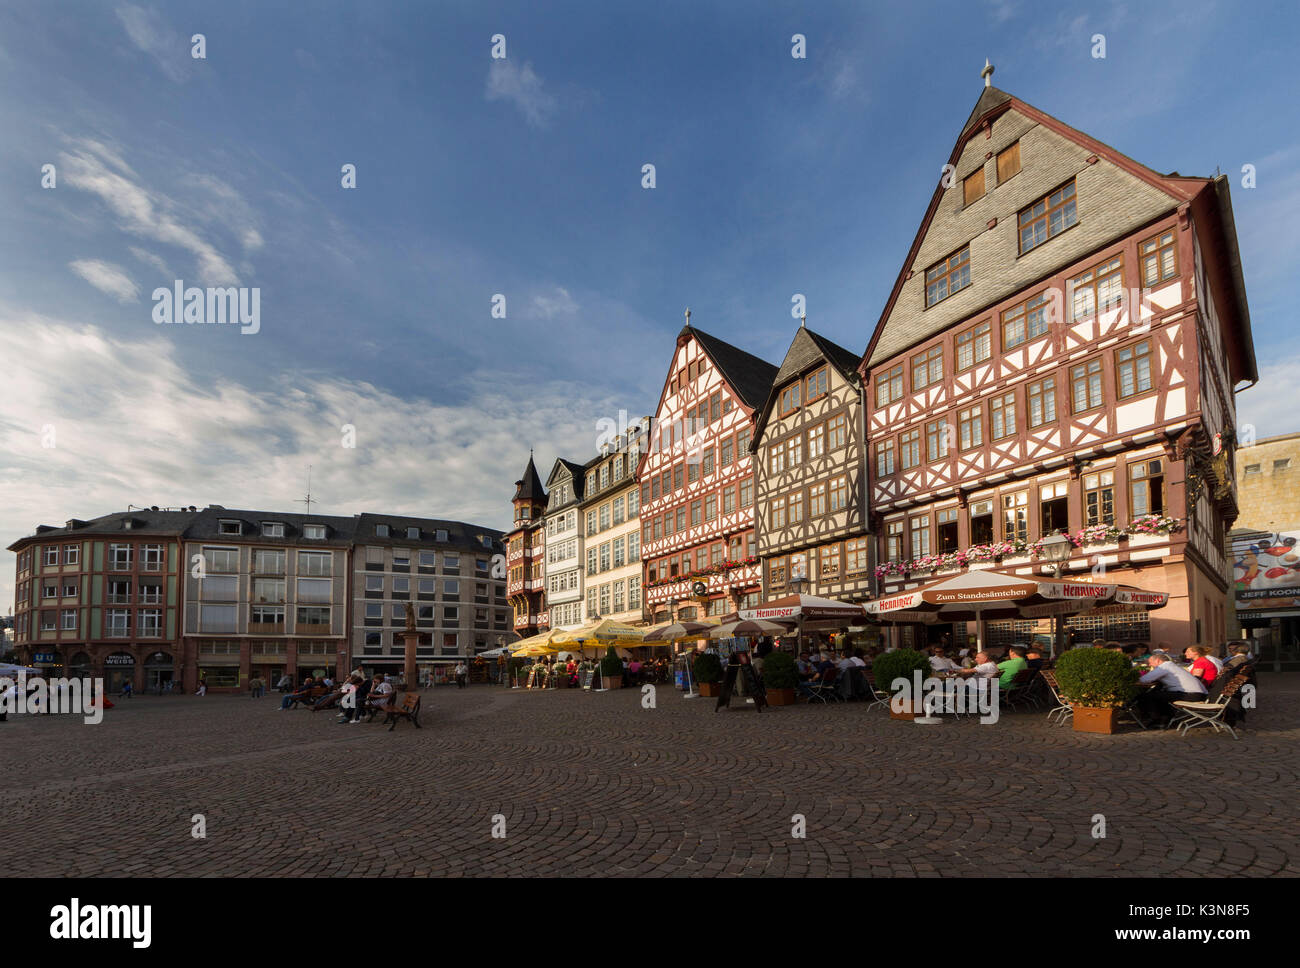 Les maisons typiques dans la Romerberg Square avec les restaurants touristiques et l'alimentation. Francfort, Allemagne Banque D'Images